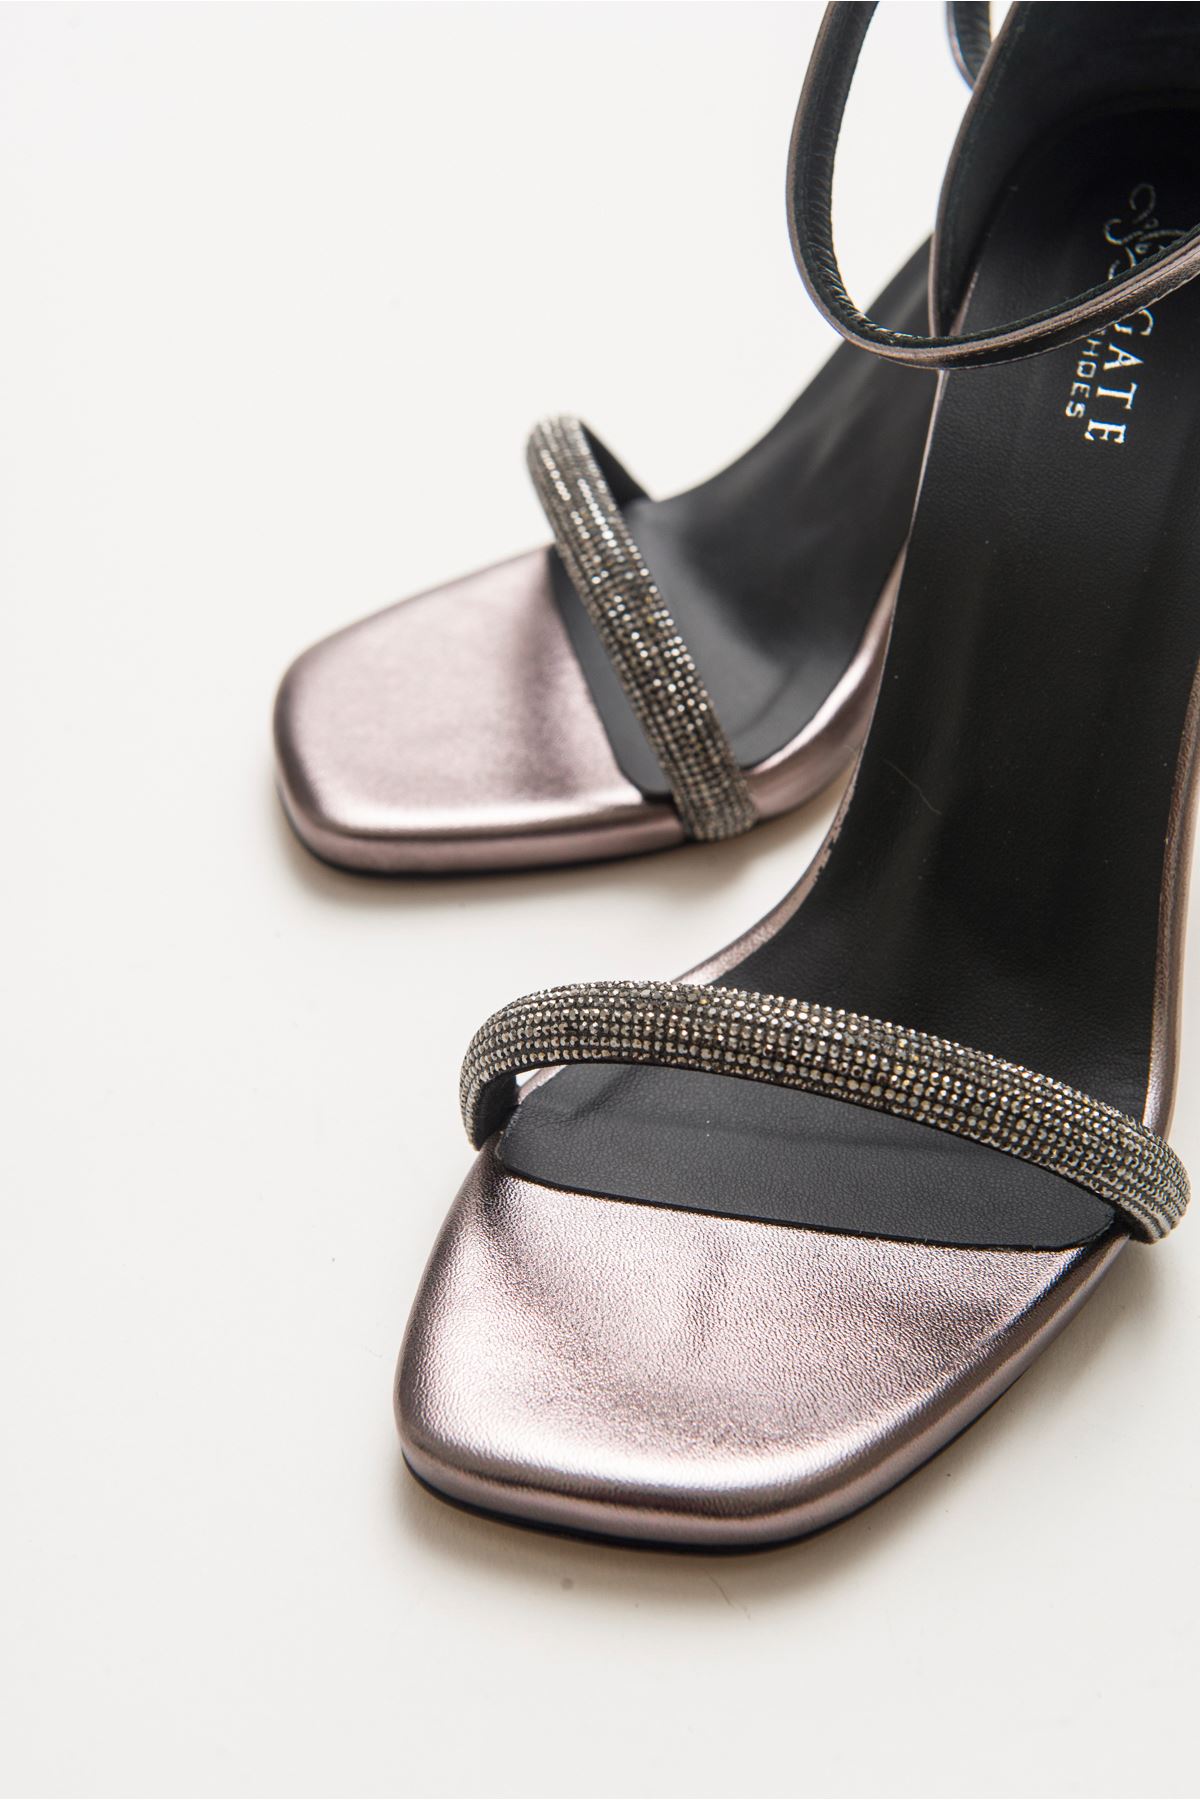 Cinzia Parlak Abiye Yüksek Topuk Taşlı Bilekten Bağlamalı Kadın Gece Ayakkabısı Gate Shoes-Platin